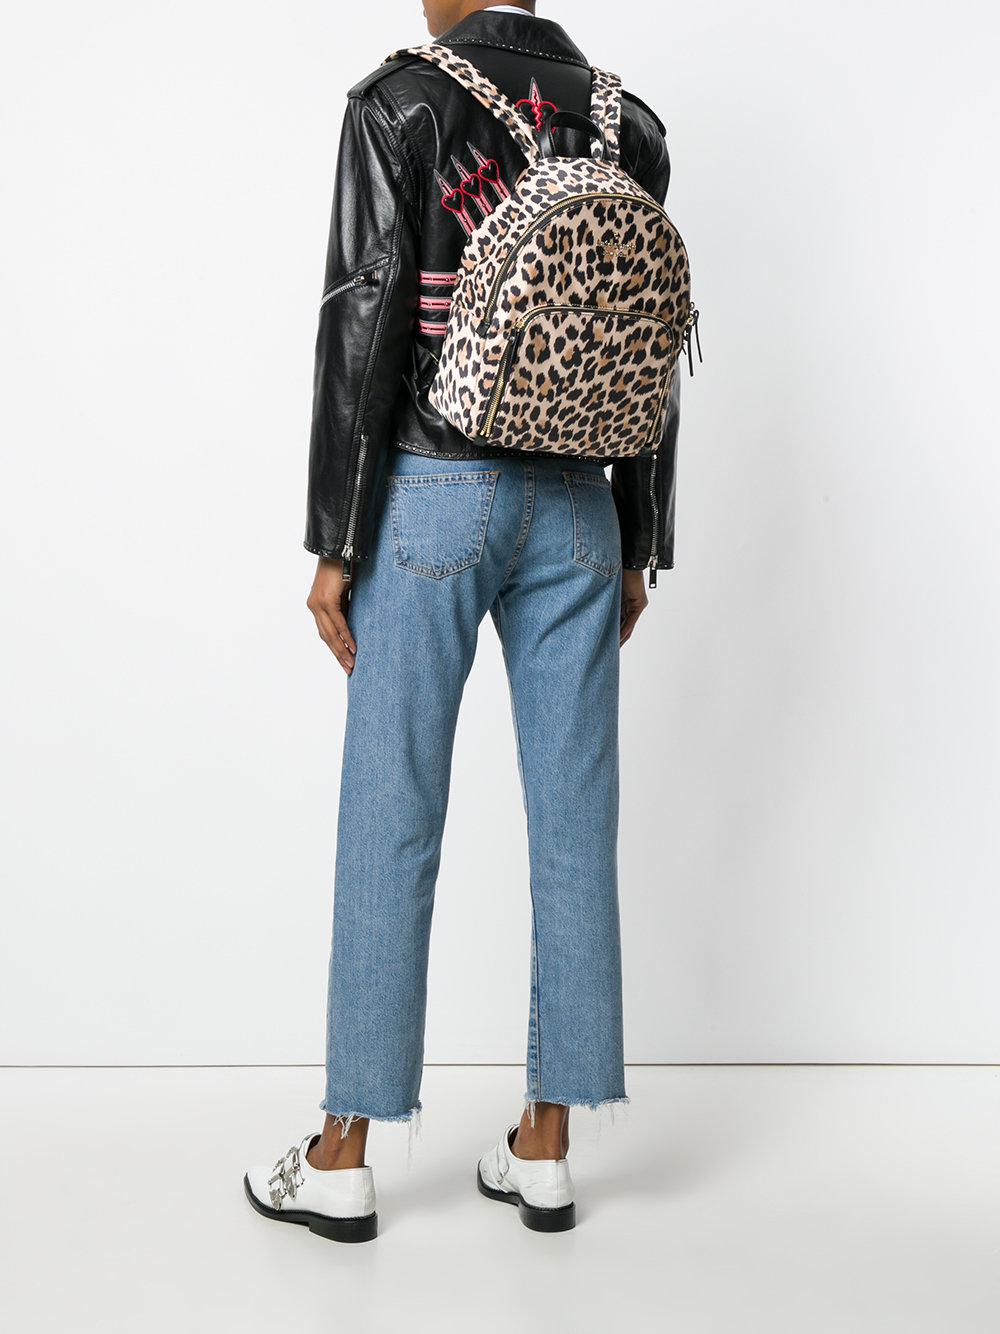 Kate Spade Leopard Print Backpack in Brown | Lyst